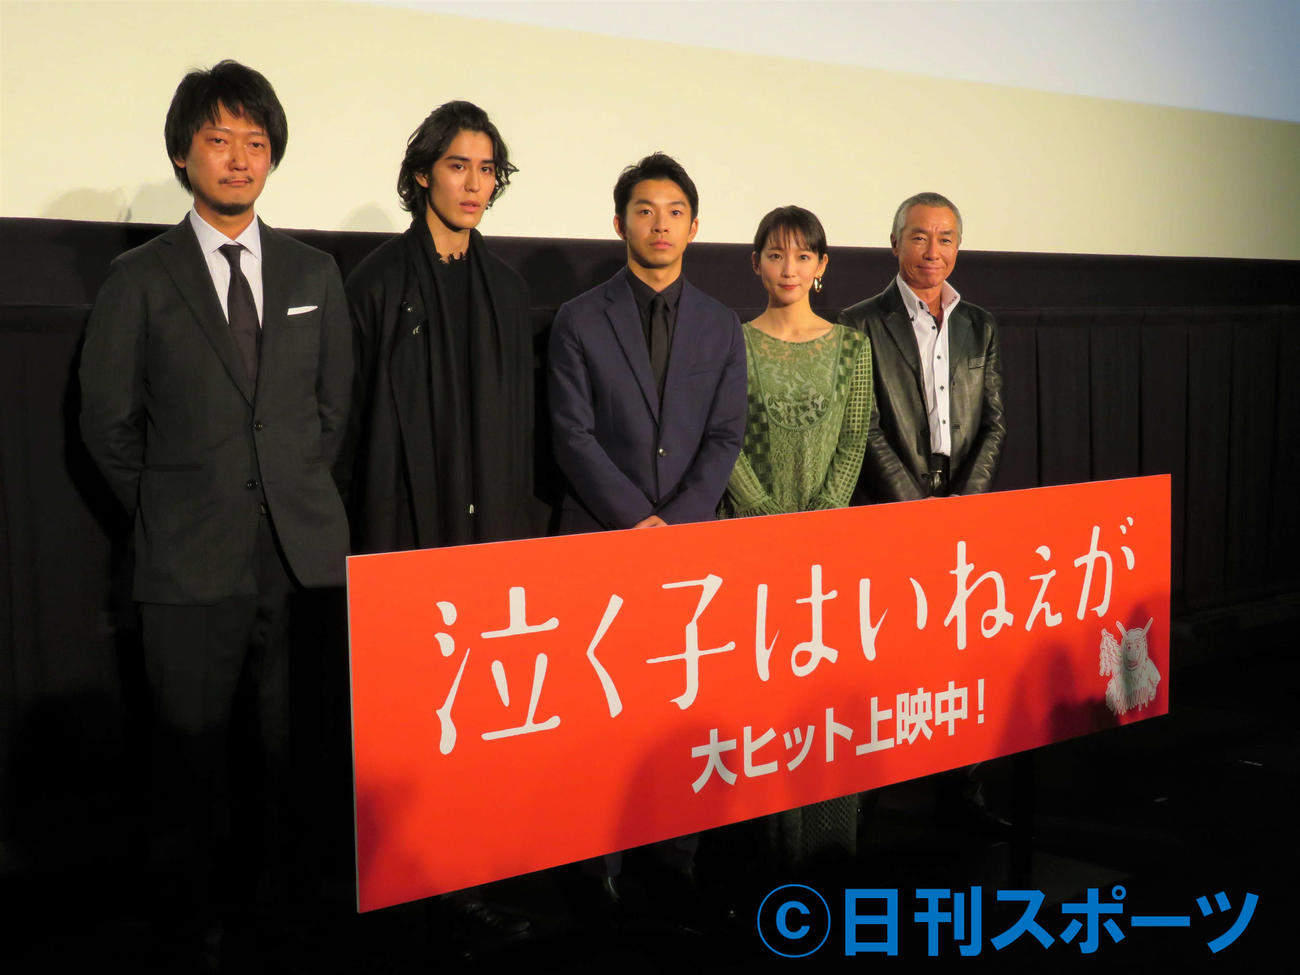 映画「泣く子はいねぇが」公開舞台あいさつに出席した、左から佐藤快磨監督、寛一郎、仲野太賀、吉岡里帆、柳葉敏郎